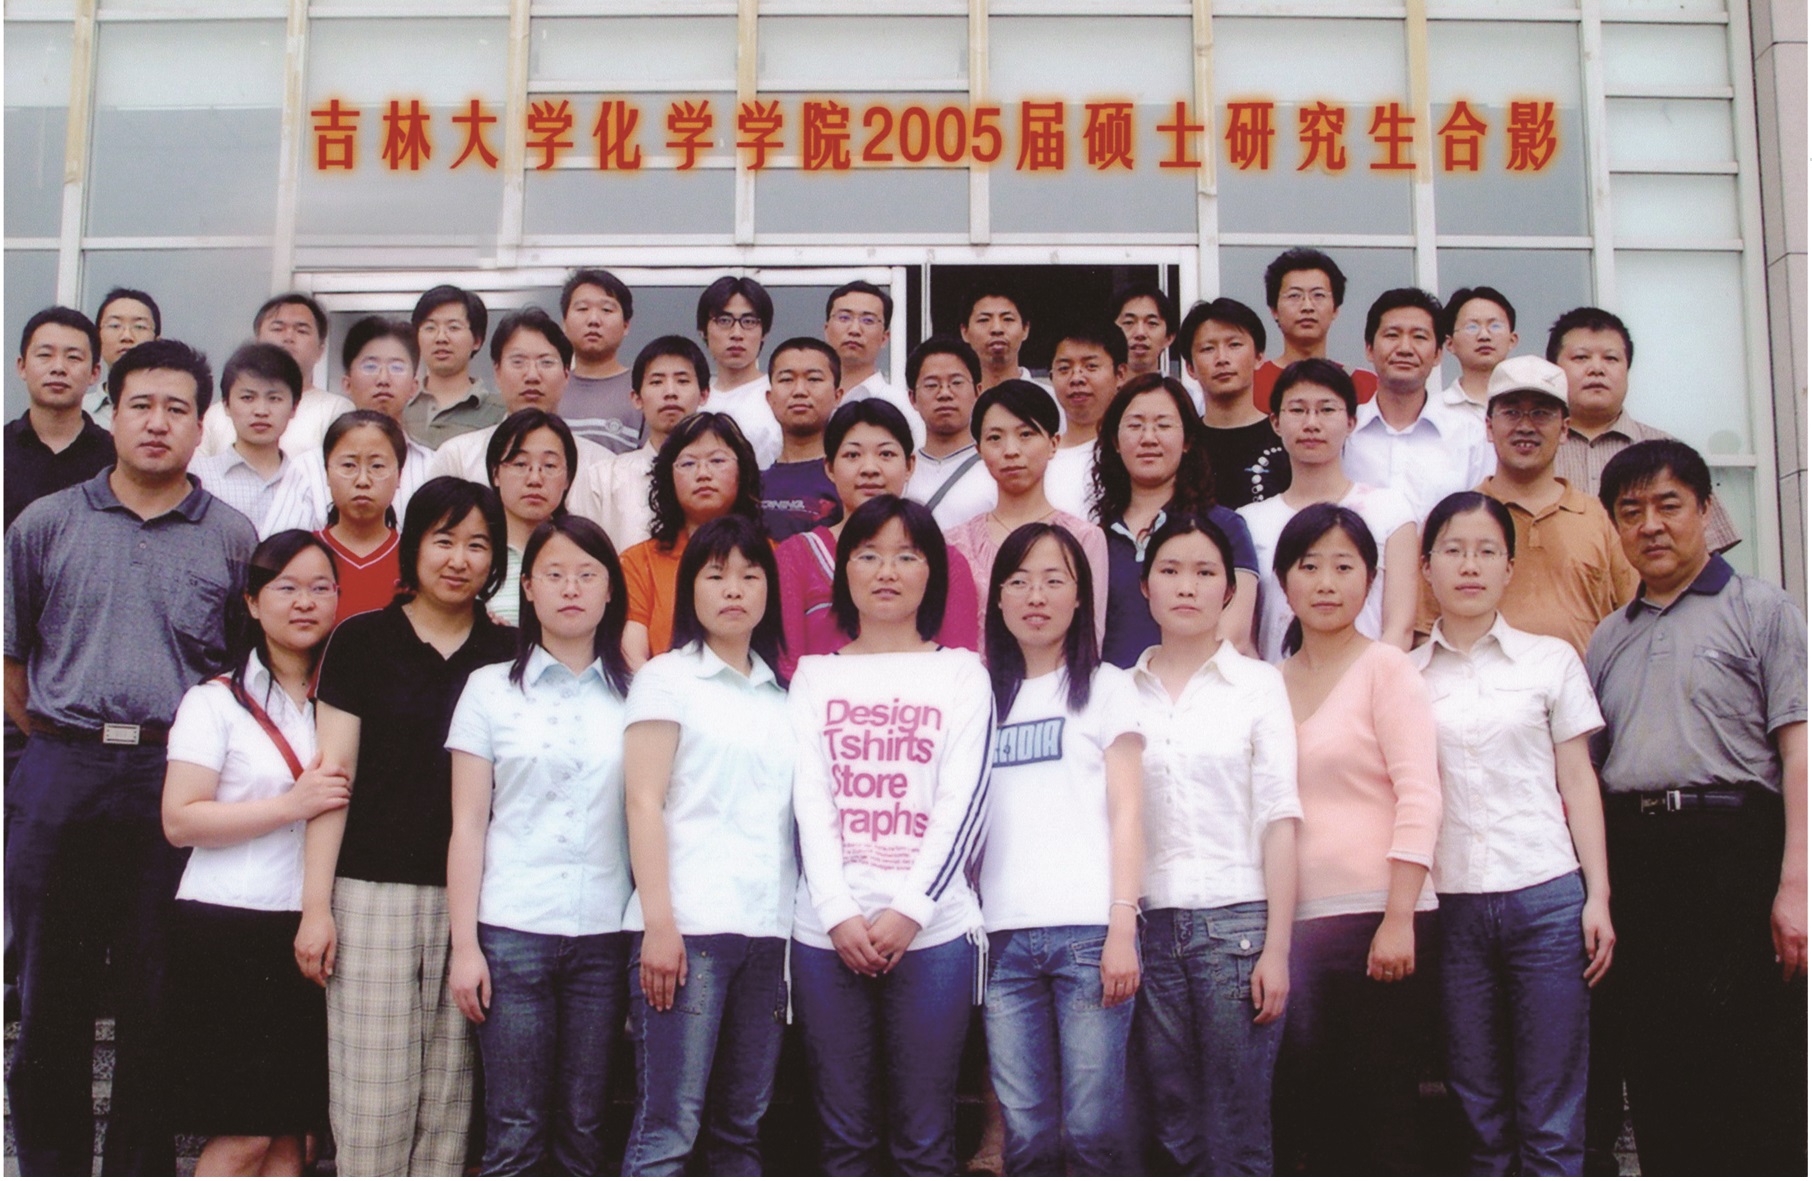 4066金沙(中国)责任有限公司官网2005届硕士毕业生合影